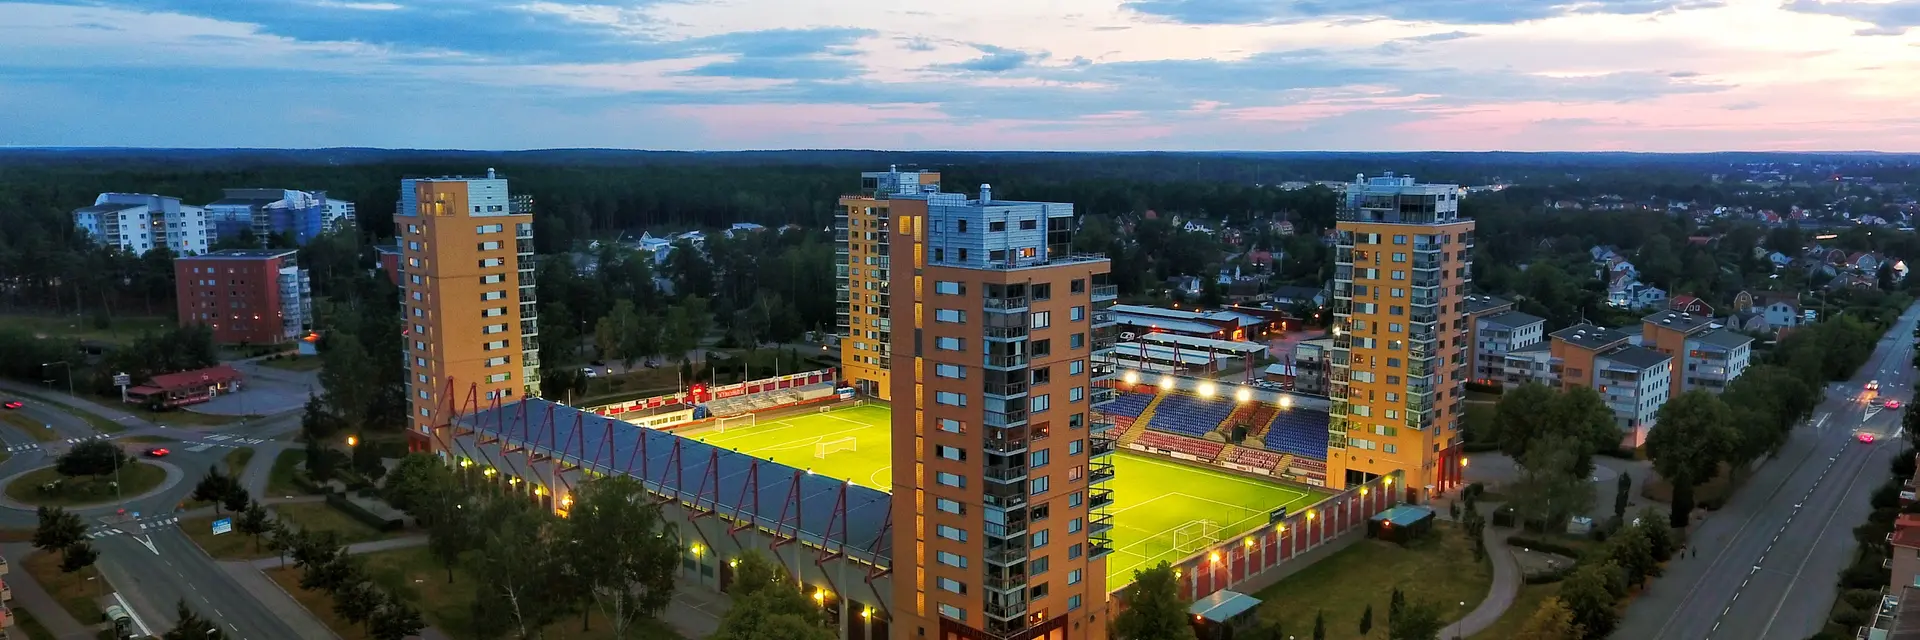 AFC Eskilstuna vann mot Dalkurd i ligacupen